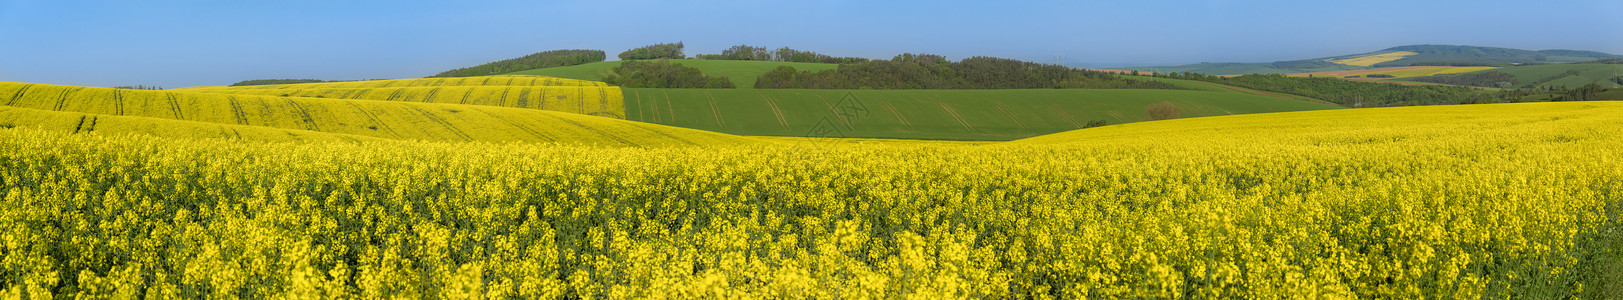 以黄色和绿的山丘为主全景黄种籽文化与绿色山丘的风景图片